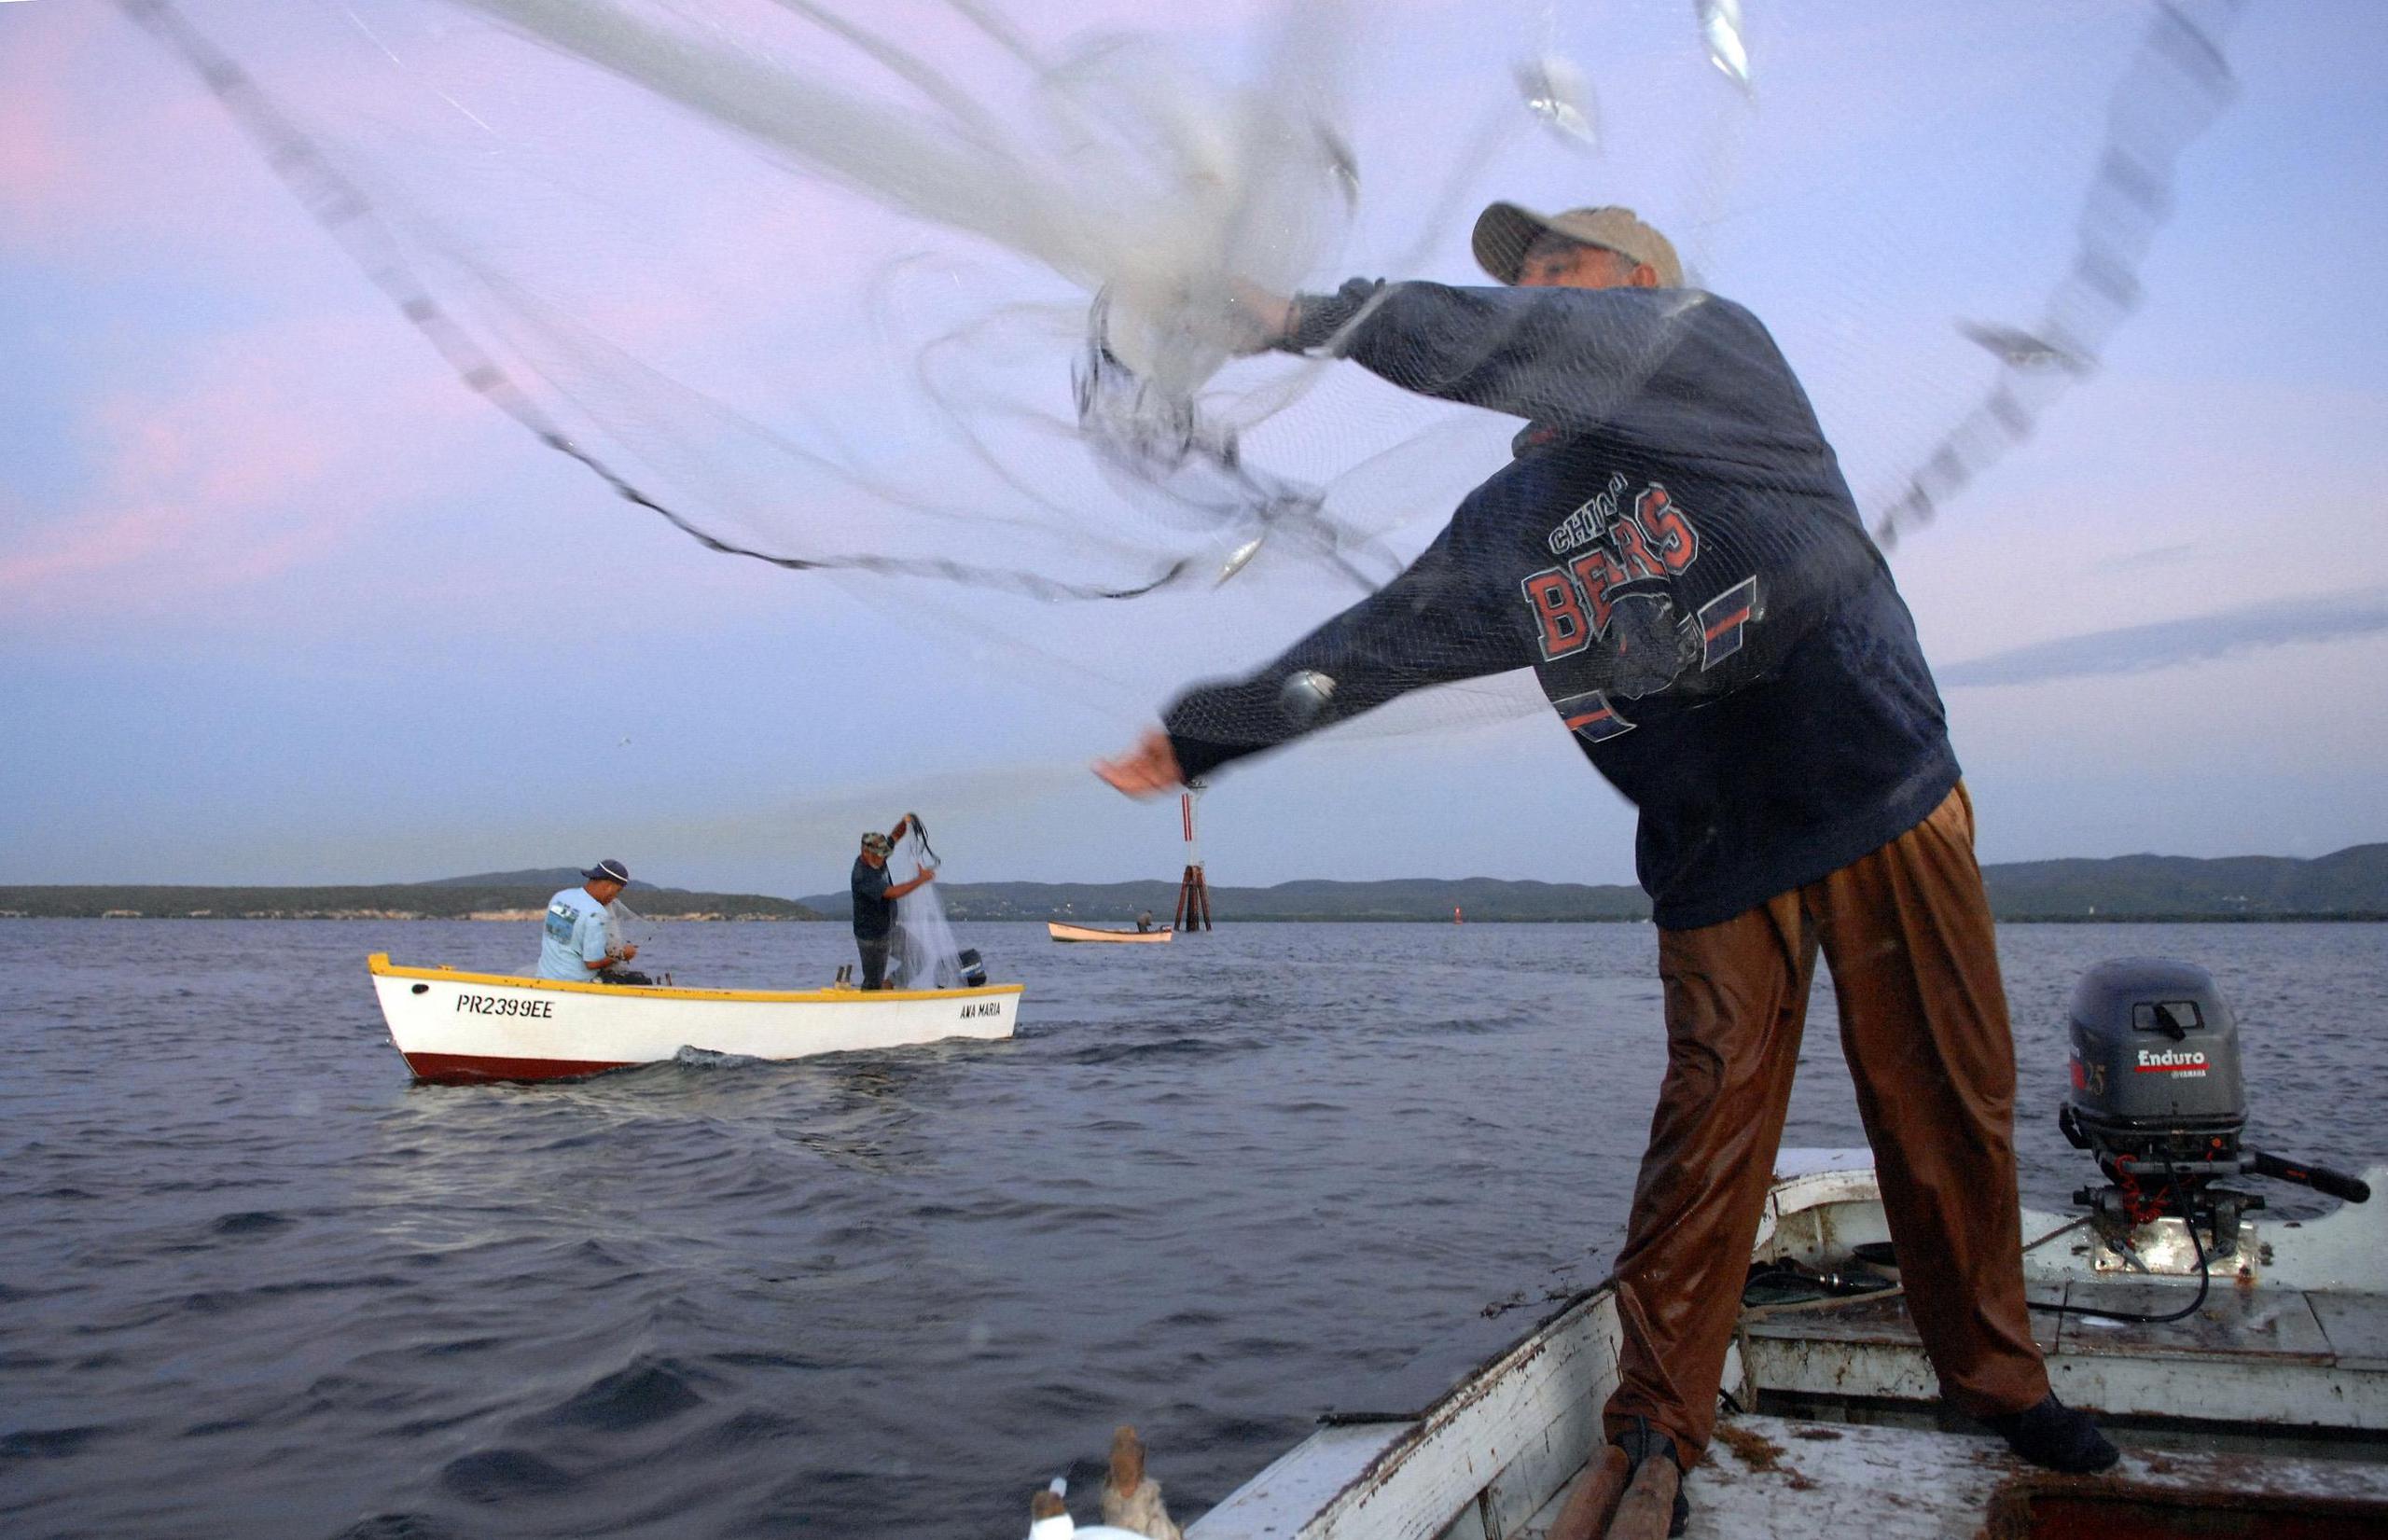 La industria de pesca local está pasando por una situación precaria luego del huracán María. (GFR Media)